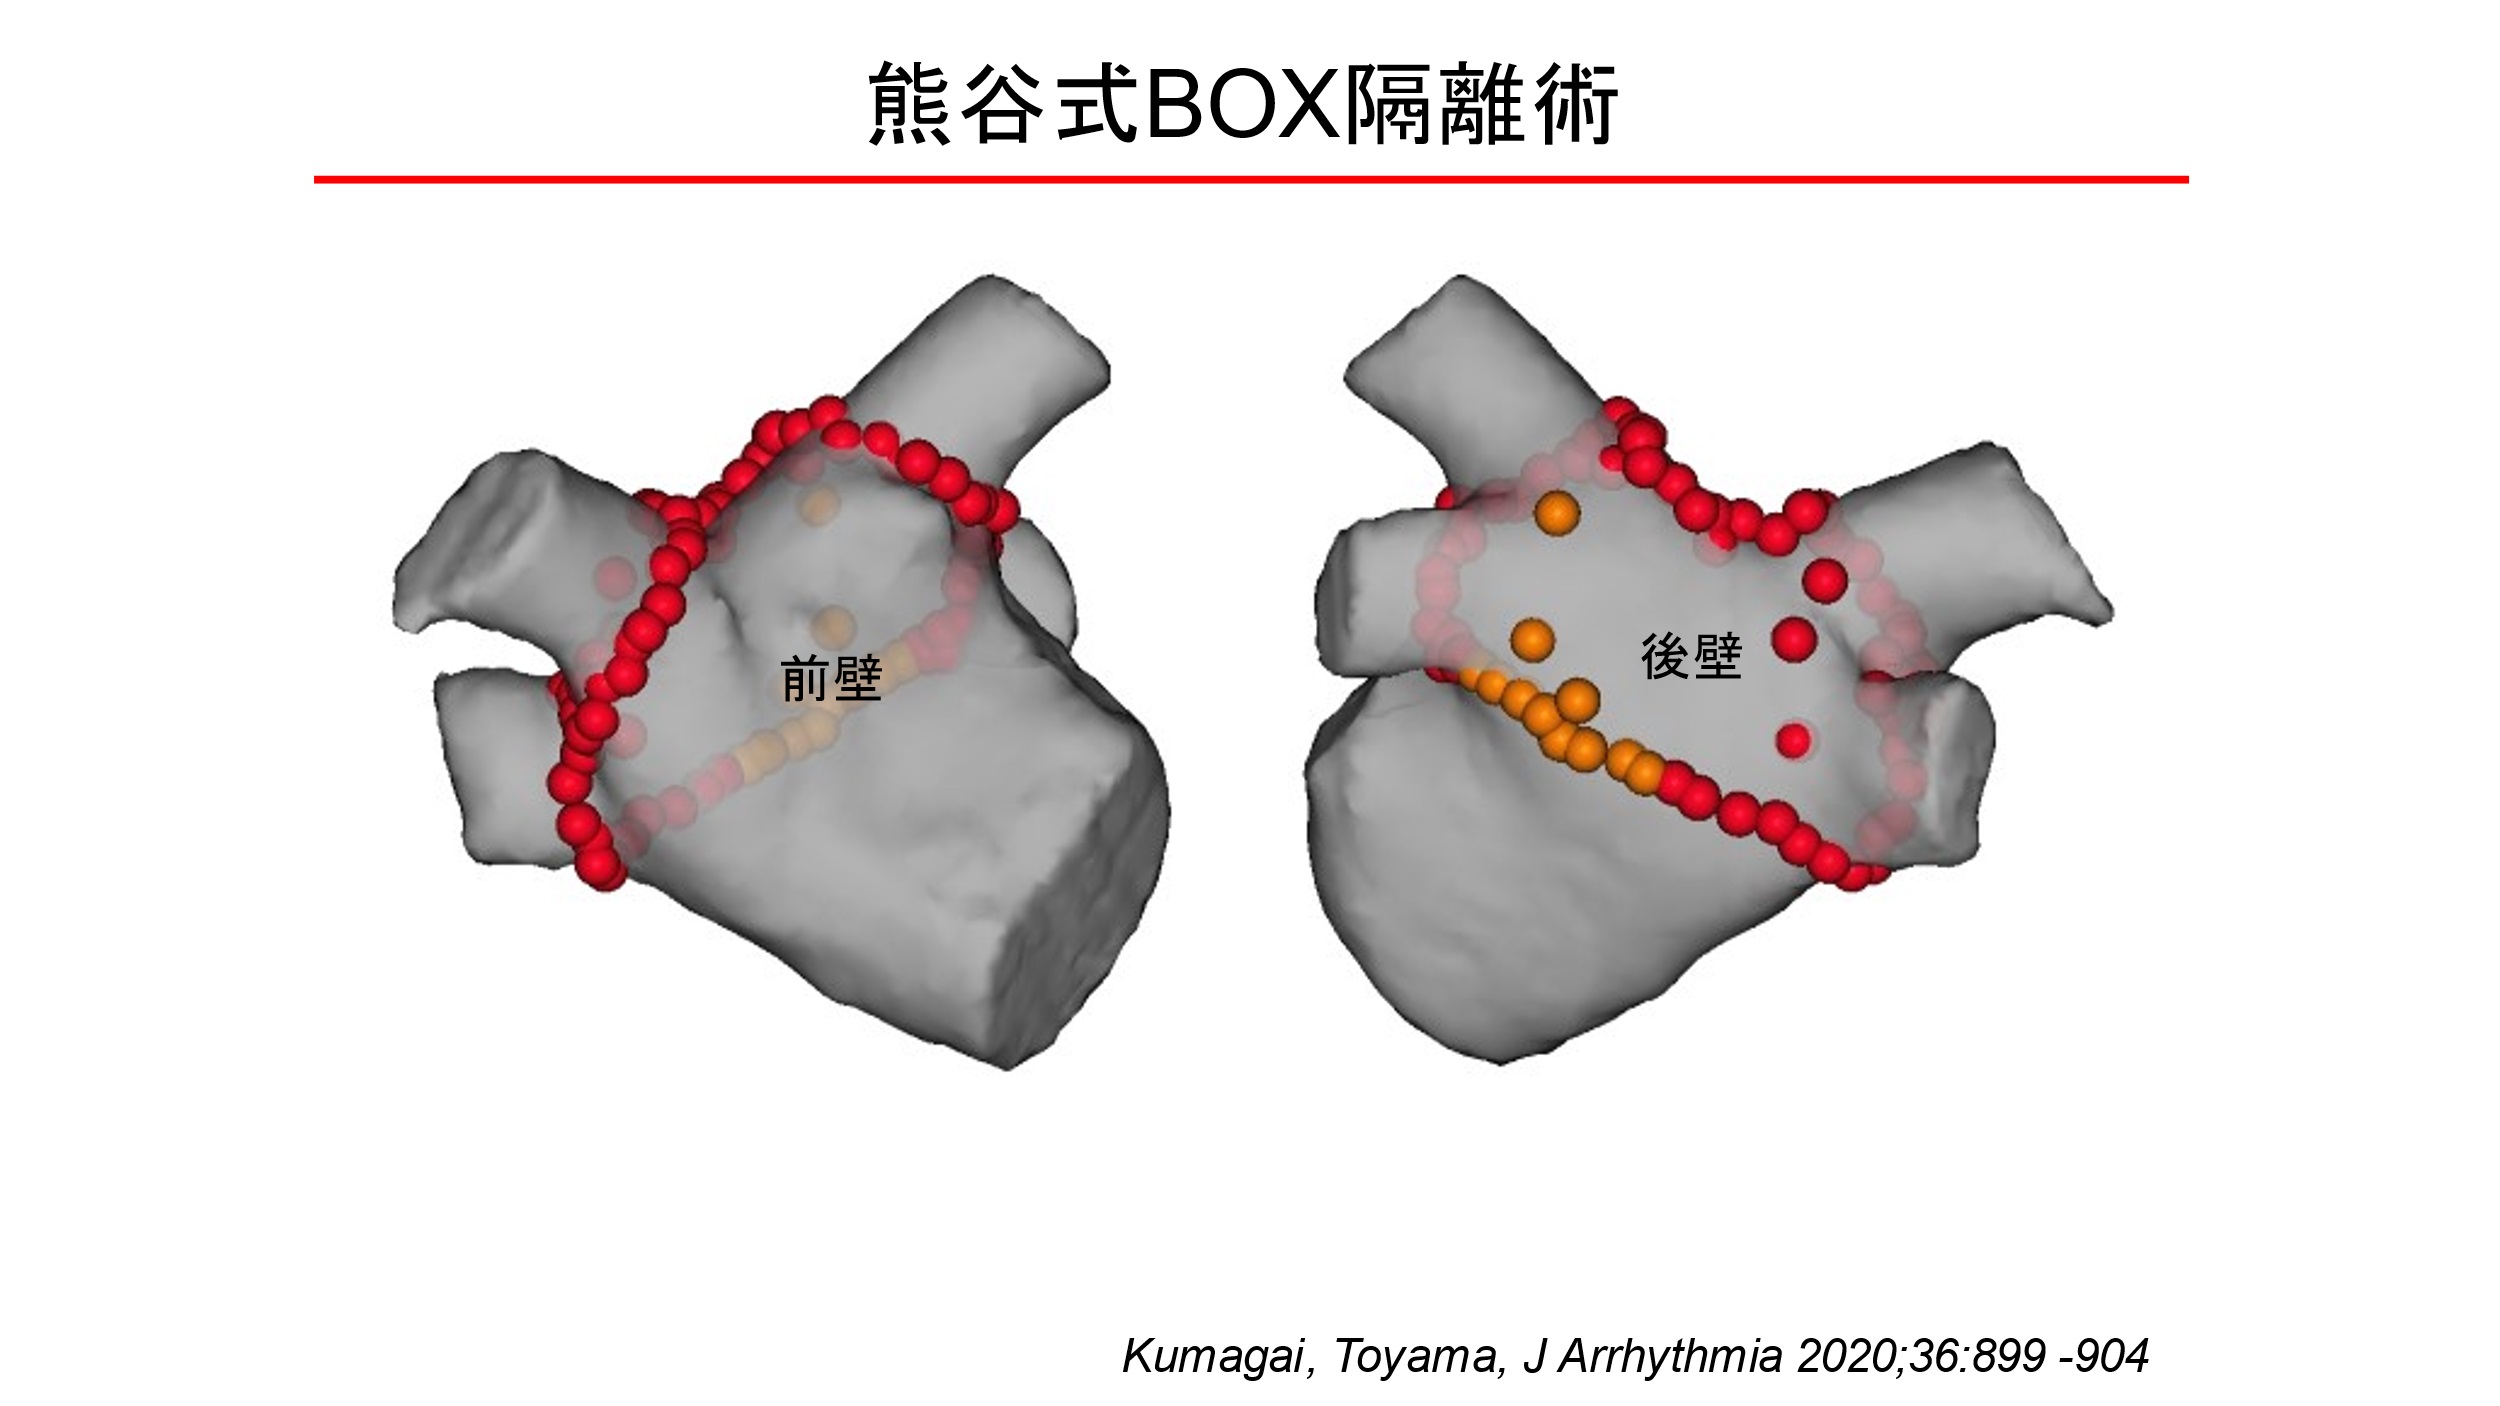 4本の肺静脈と左心房の後壁までBOX（箱）のように広く隔離する（熊谷浩一郎医師提供）